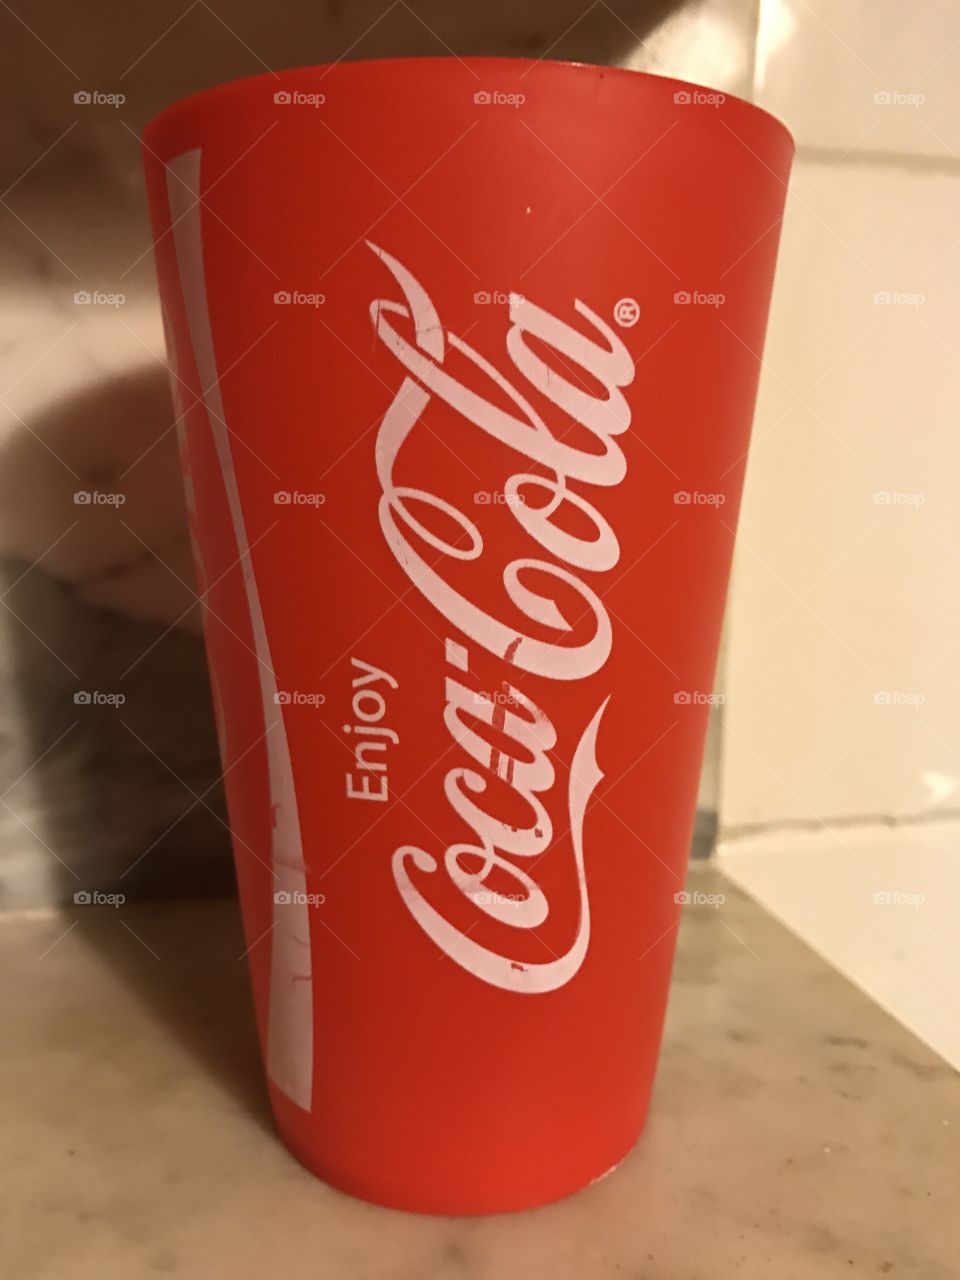 Enjoy Coca Cola. 